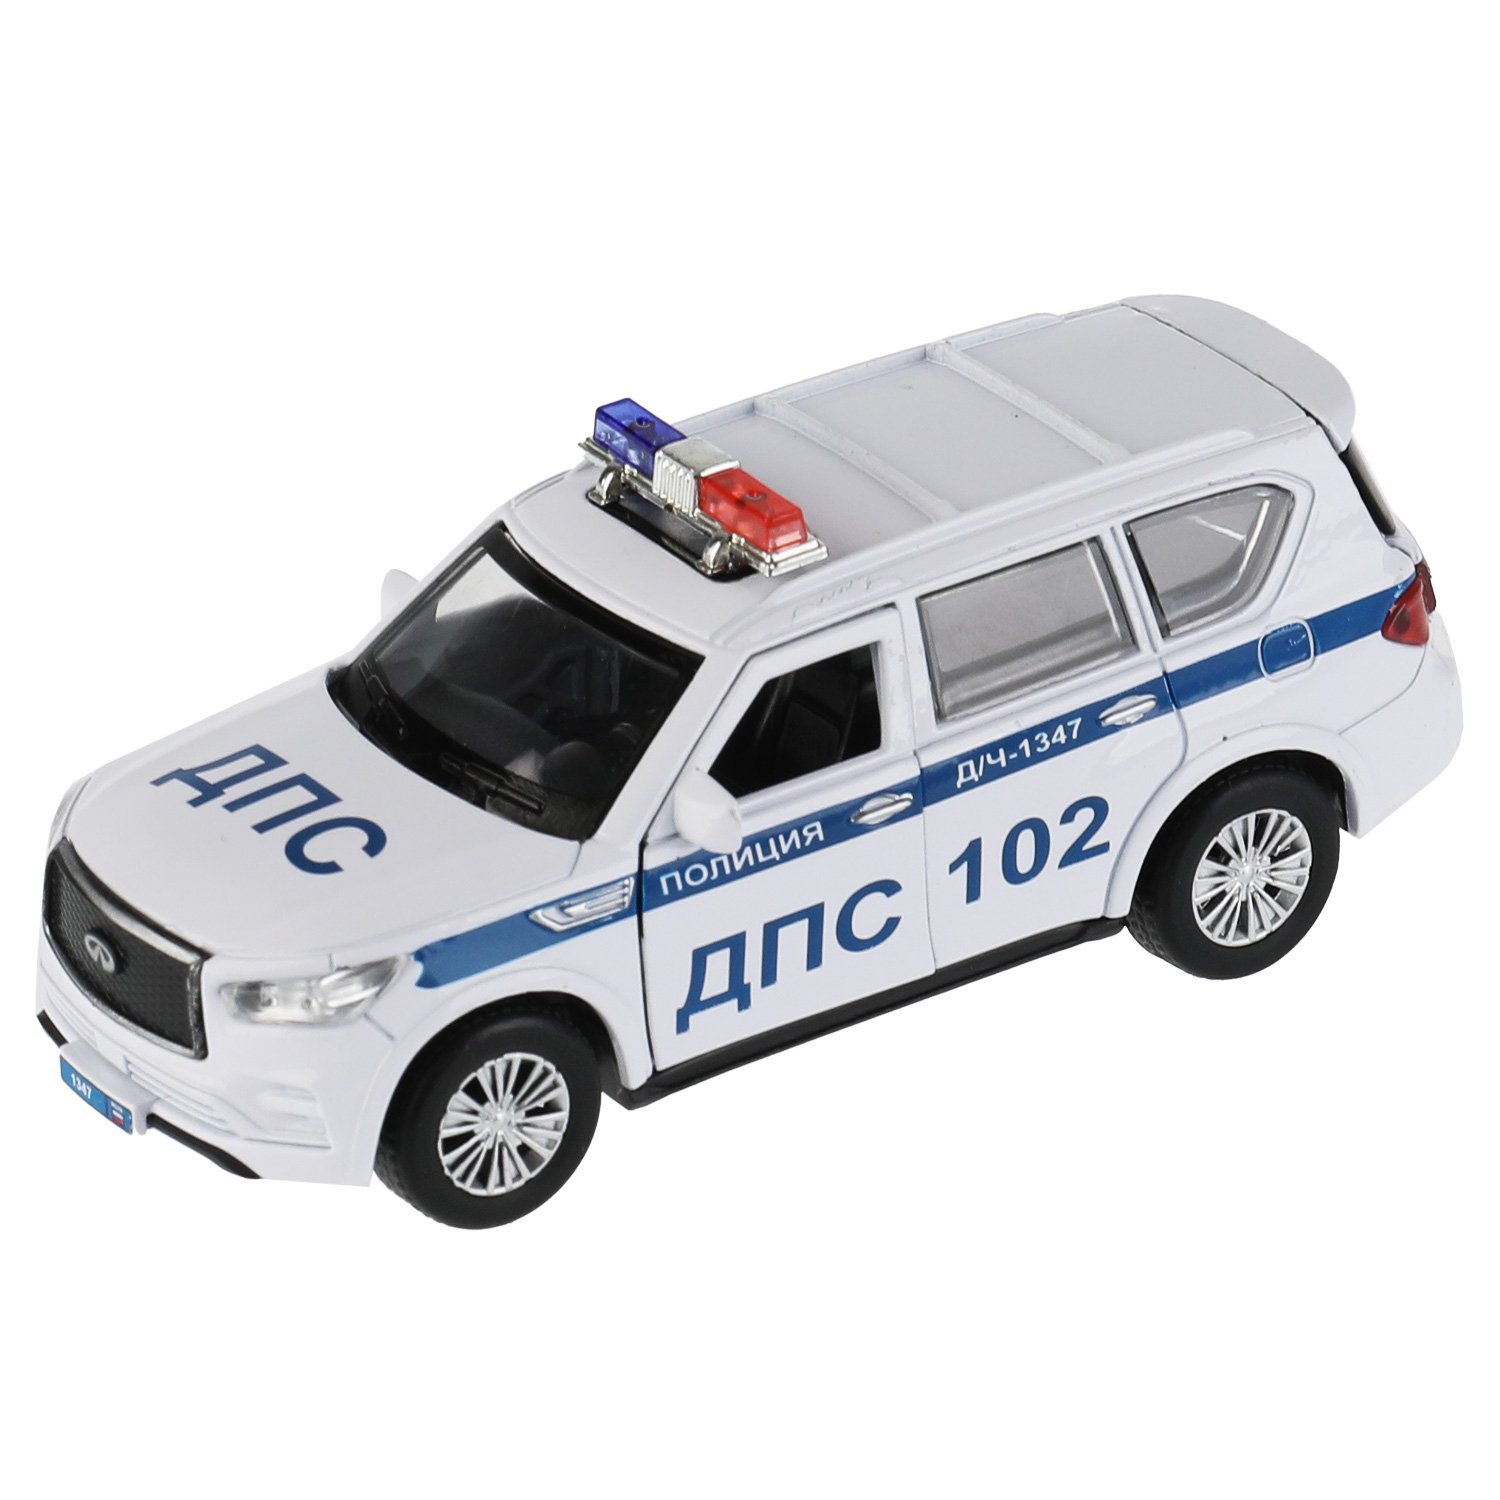 Машина металл Infiniti Qx80 Полиция, 12,5 см, (откр двери, баг, белый) инер, в коробке